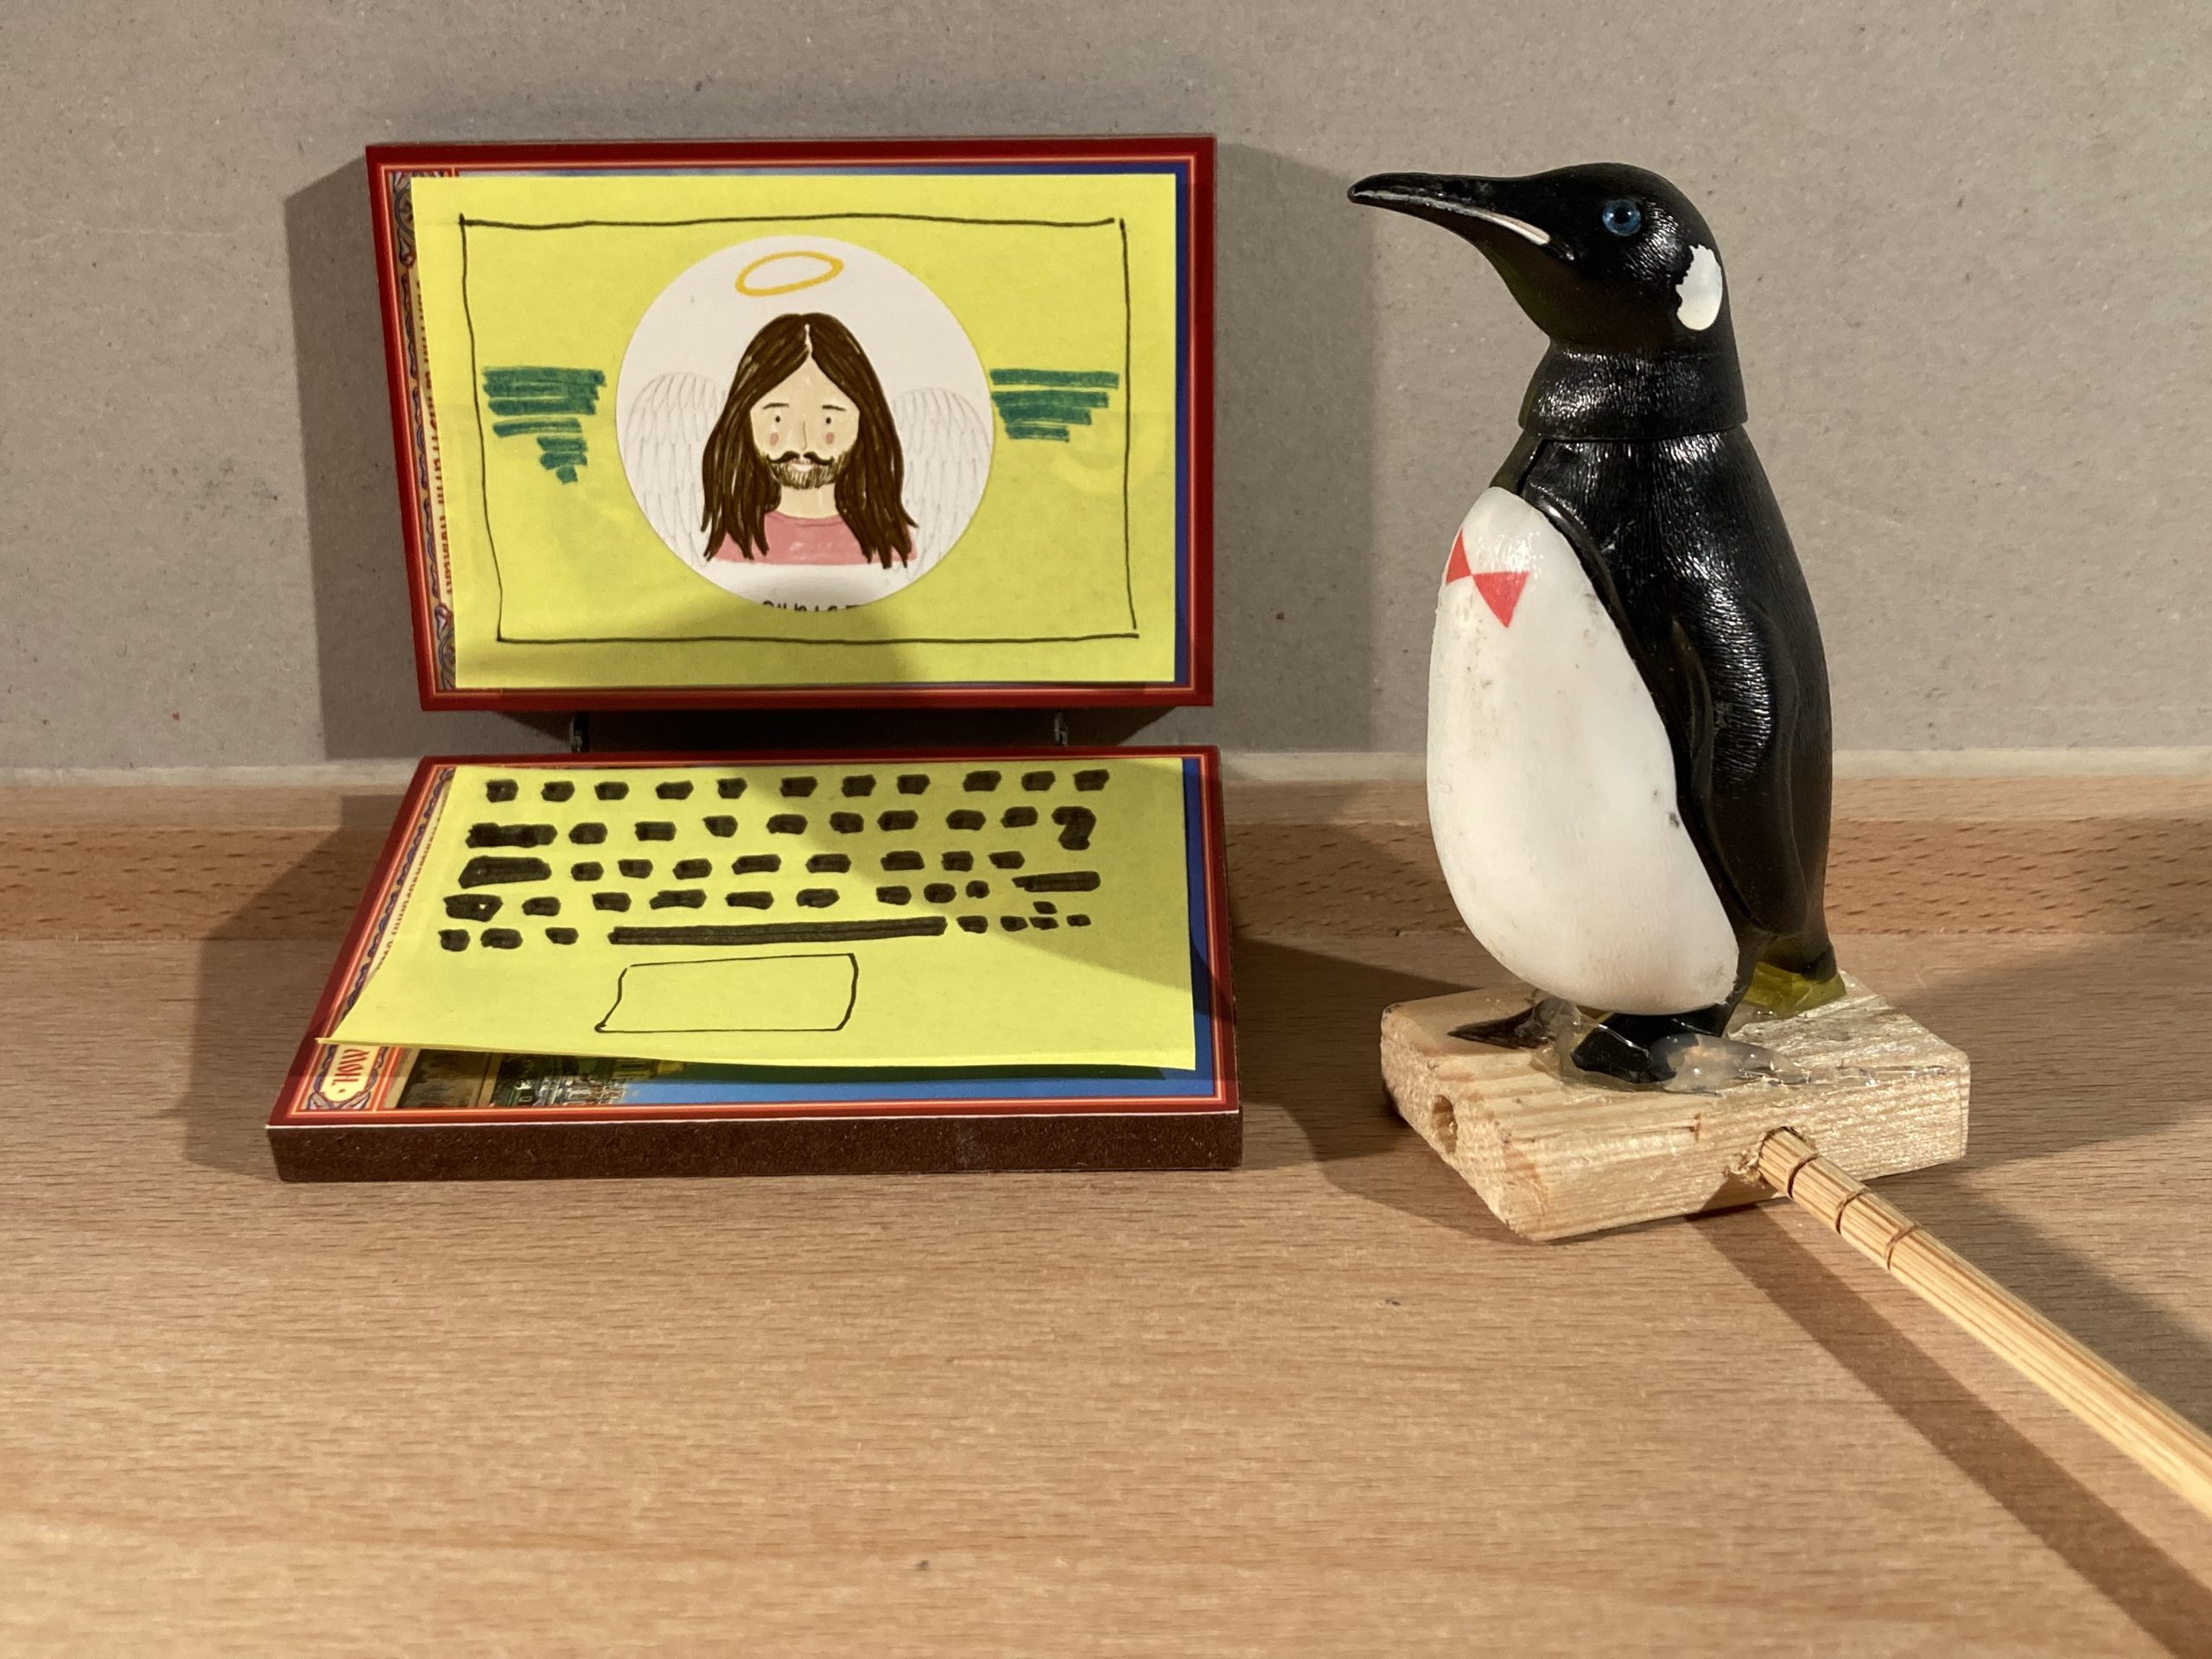 Rechts im Bild ist ein Pinguin. Er schaut sich den Laptop an. Auf dem Bildschirm des Laptops ist ein Mann mit langen Haaren zu sehen. Er lächelt.